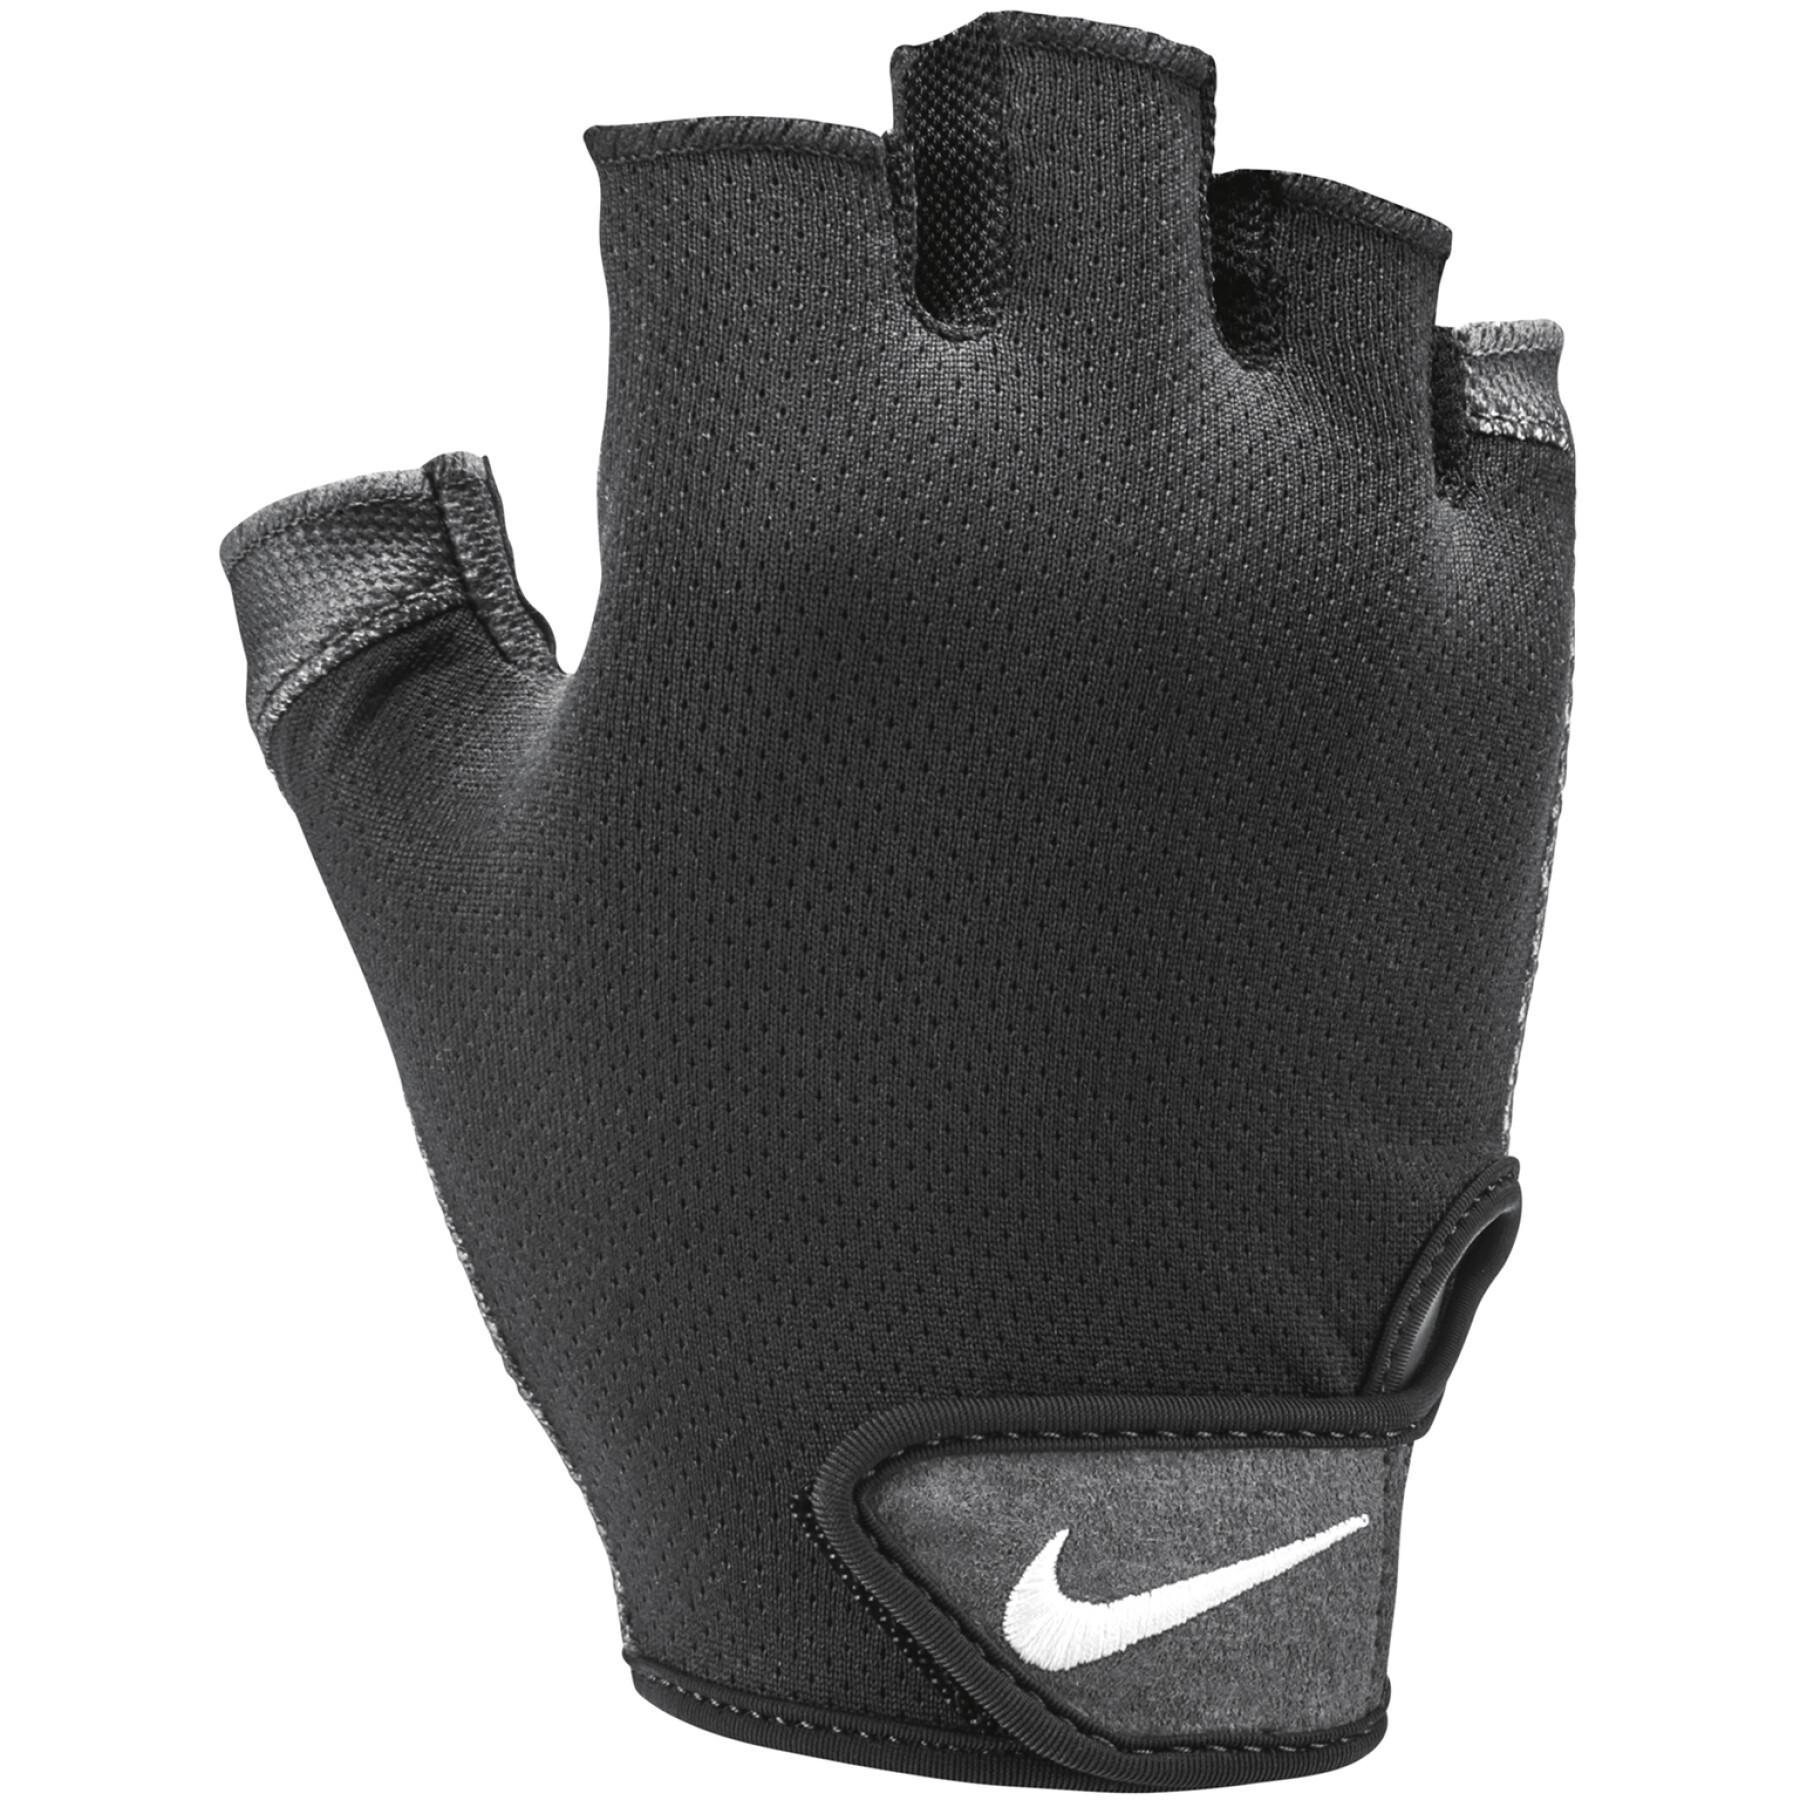 Gloves mitten Nike Essential fitness